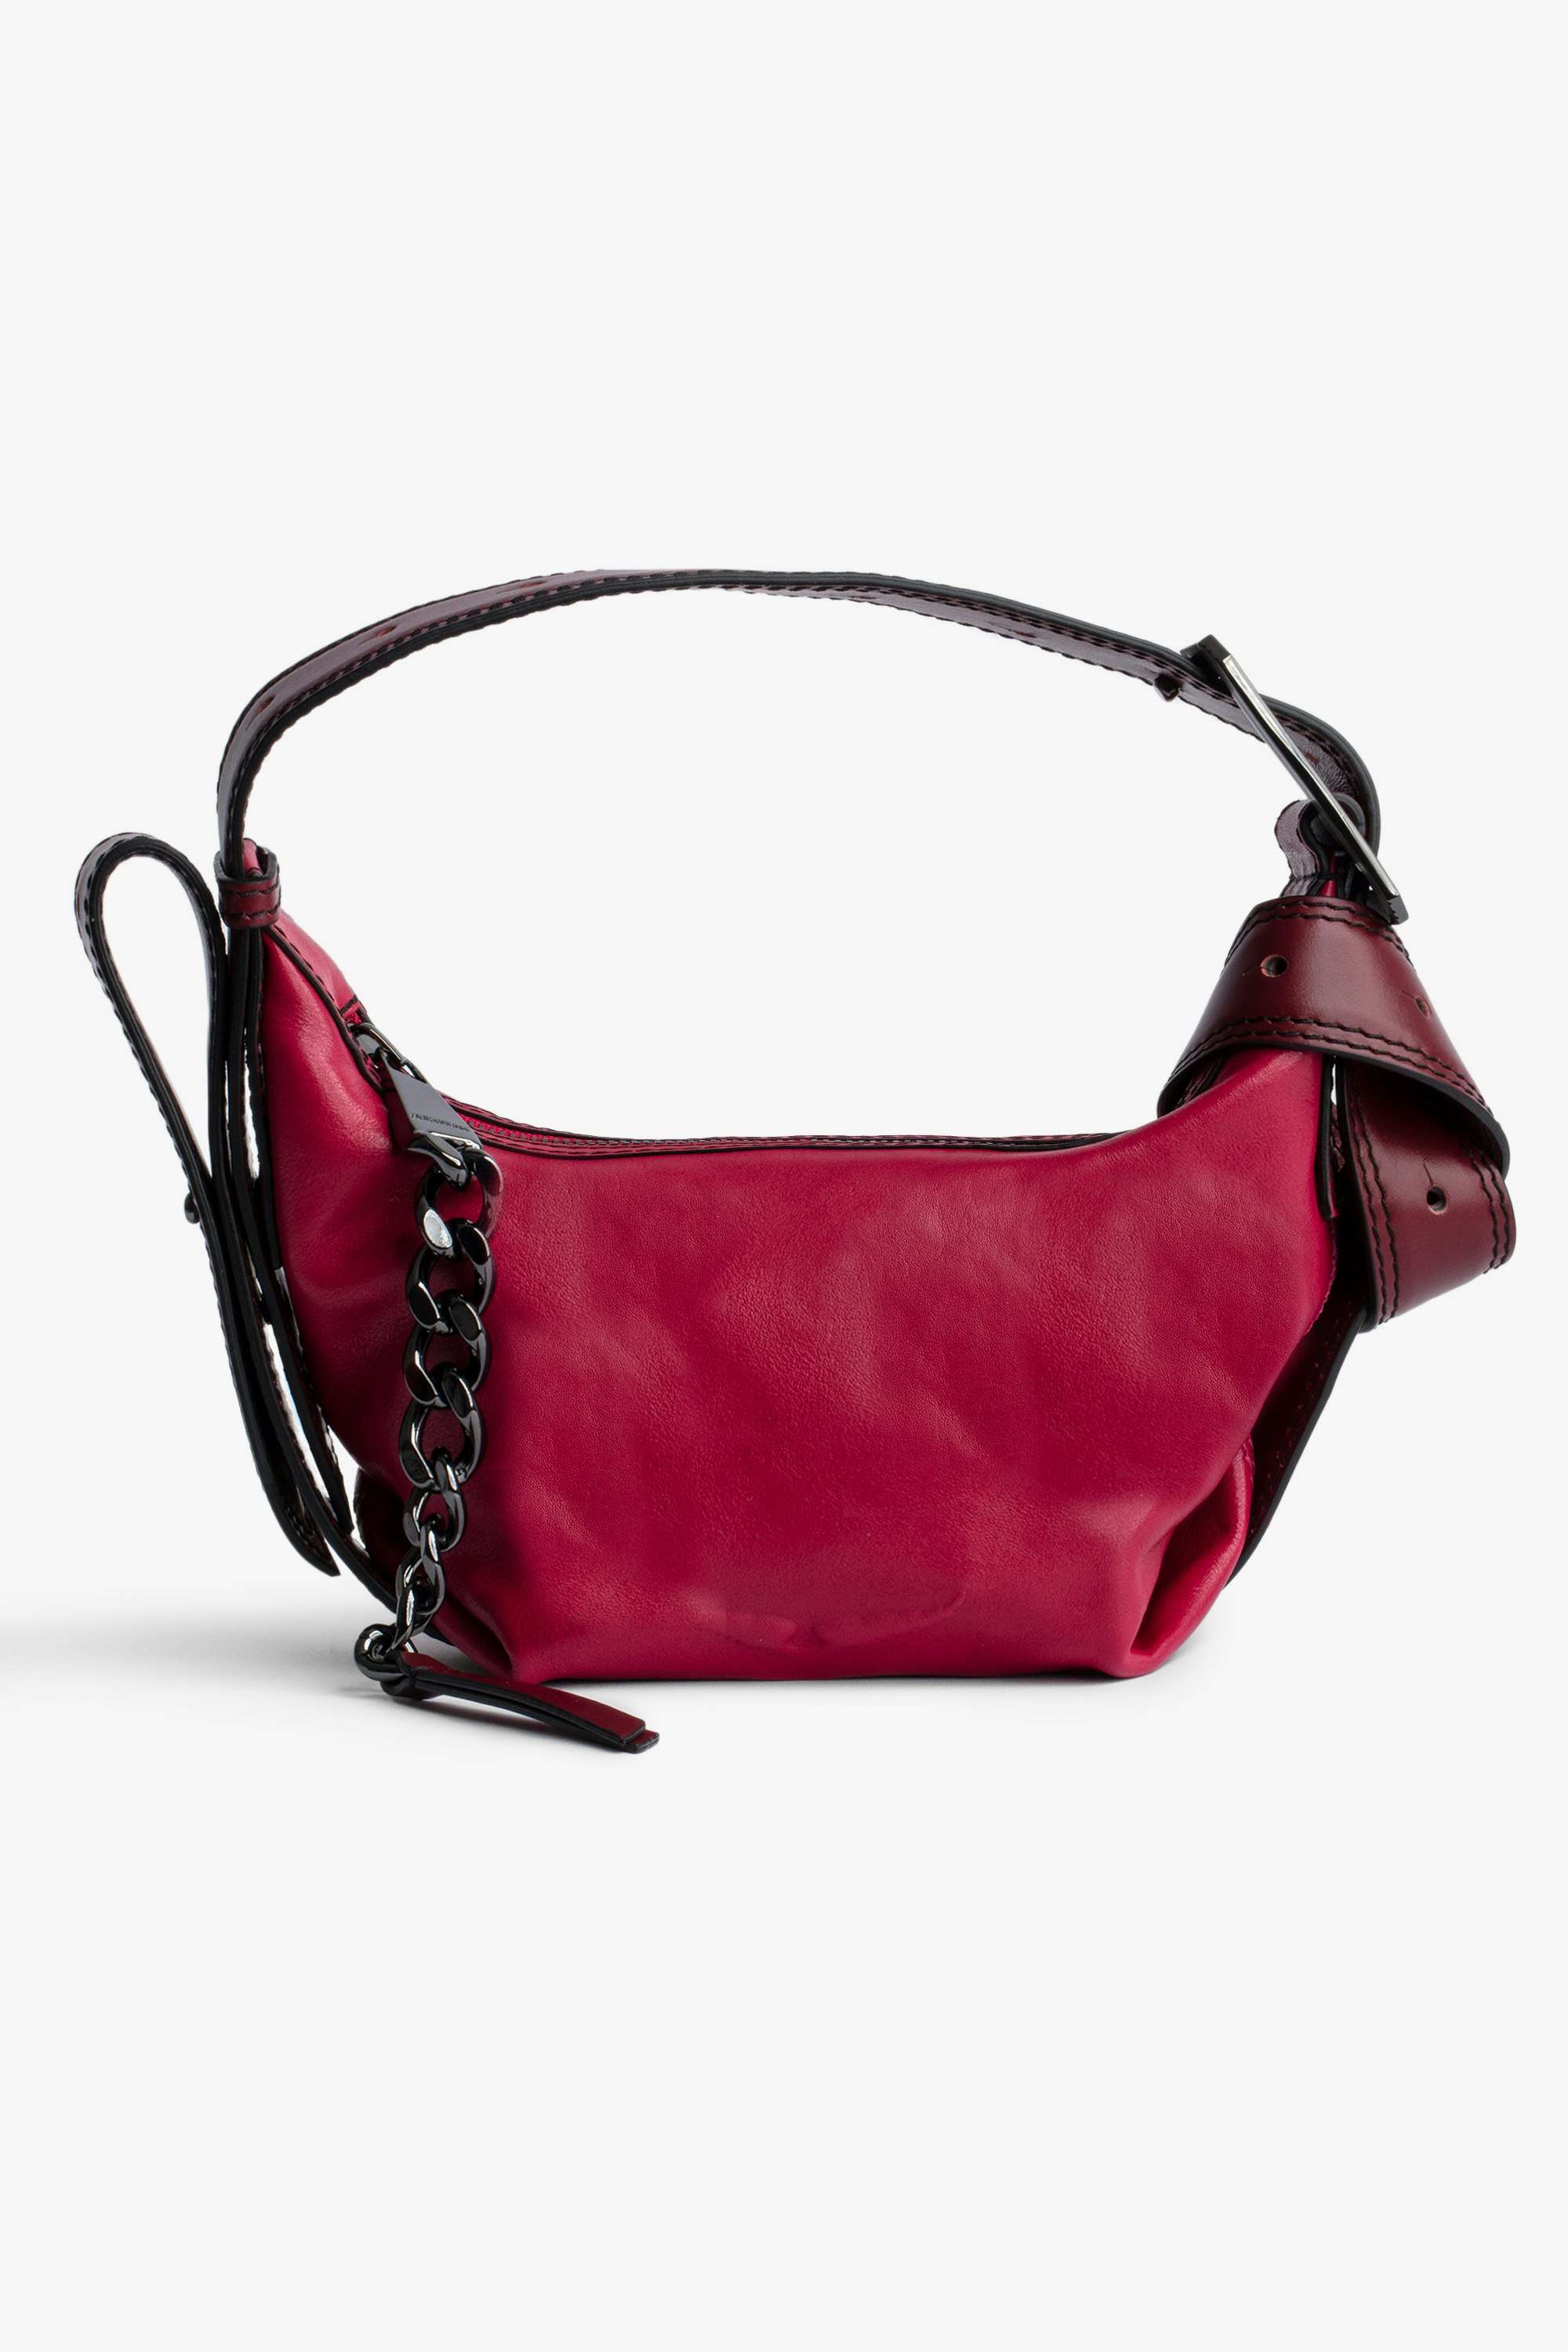 Le Cecilia XS Bag Women’s small Le Cecilia bag in fuchsia pink leather